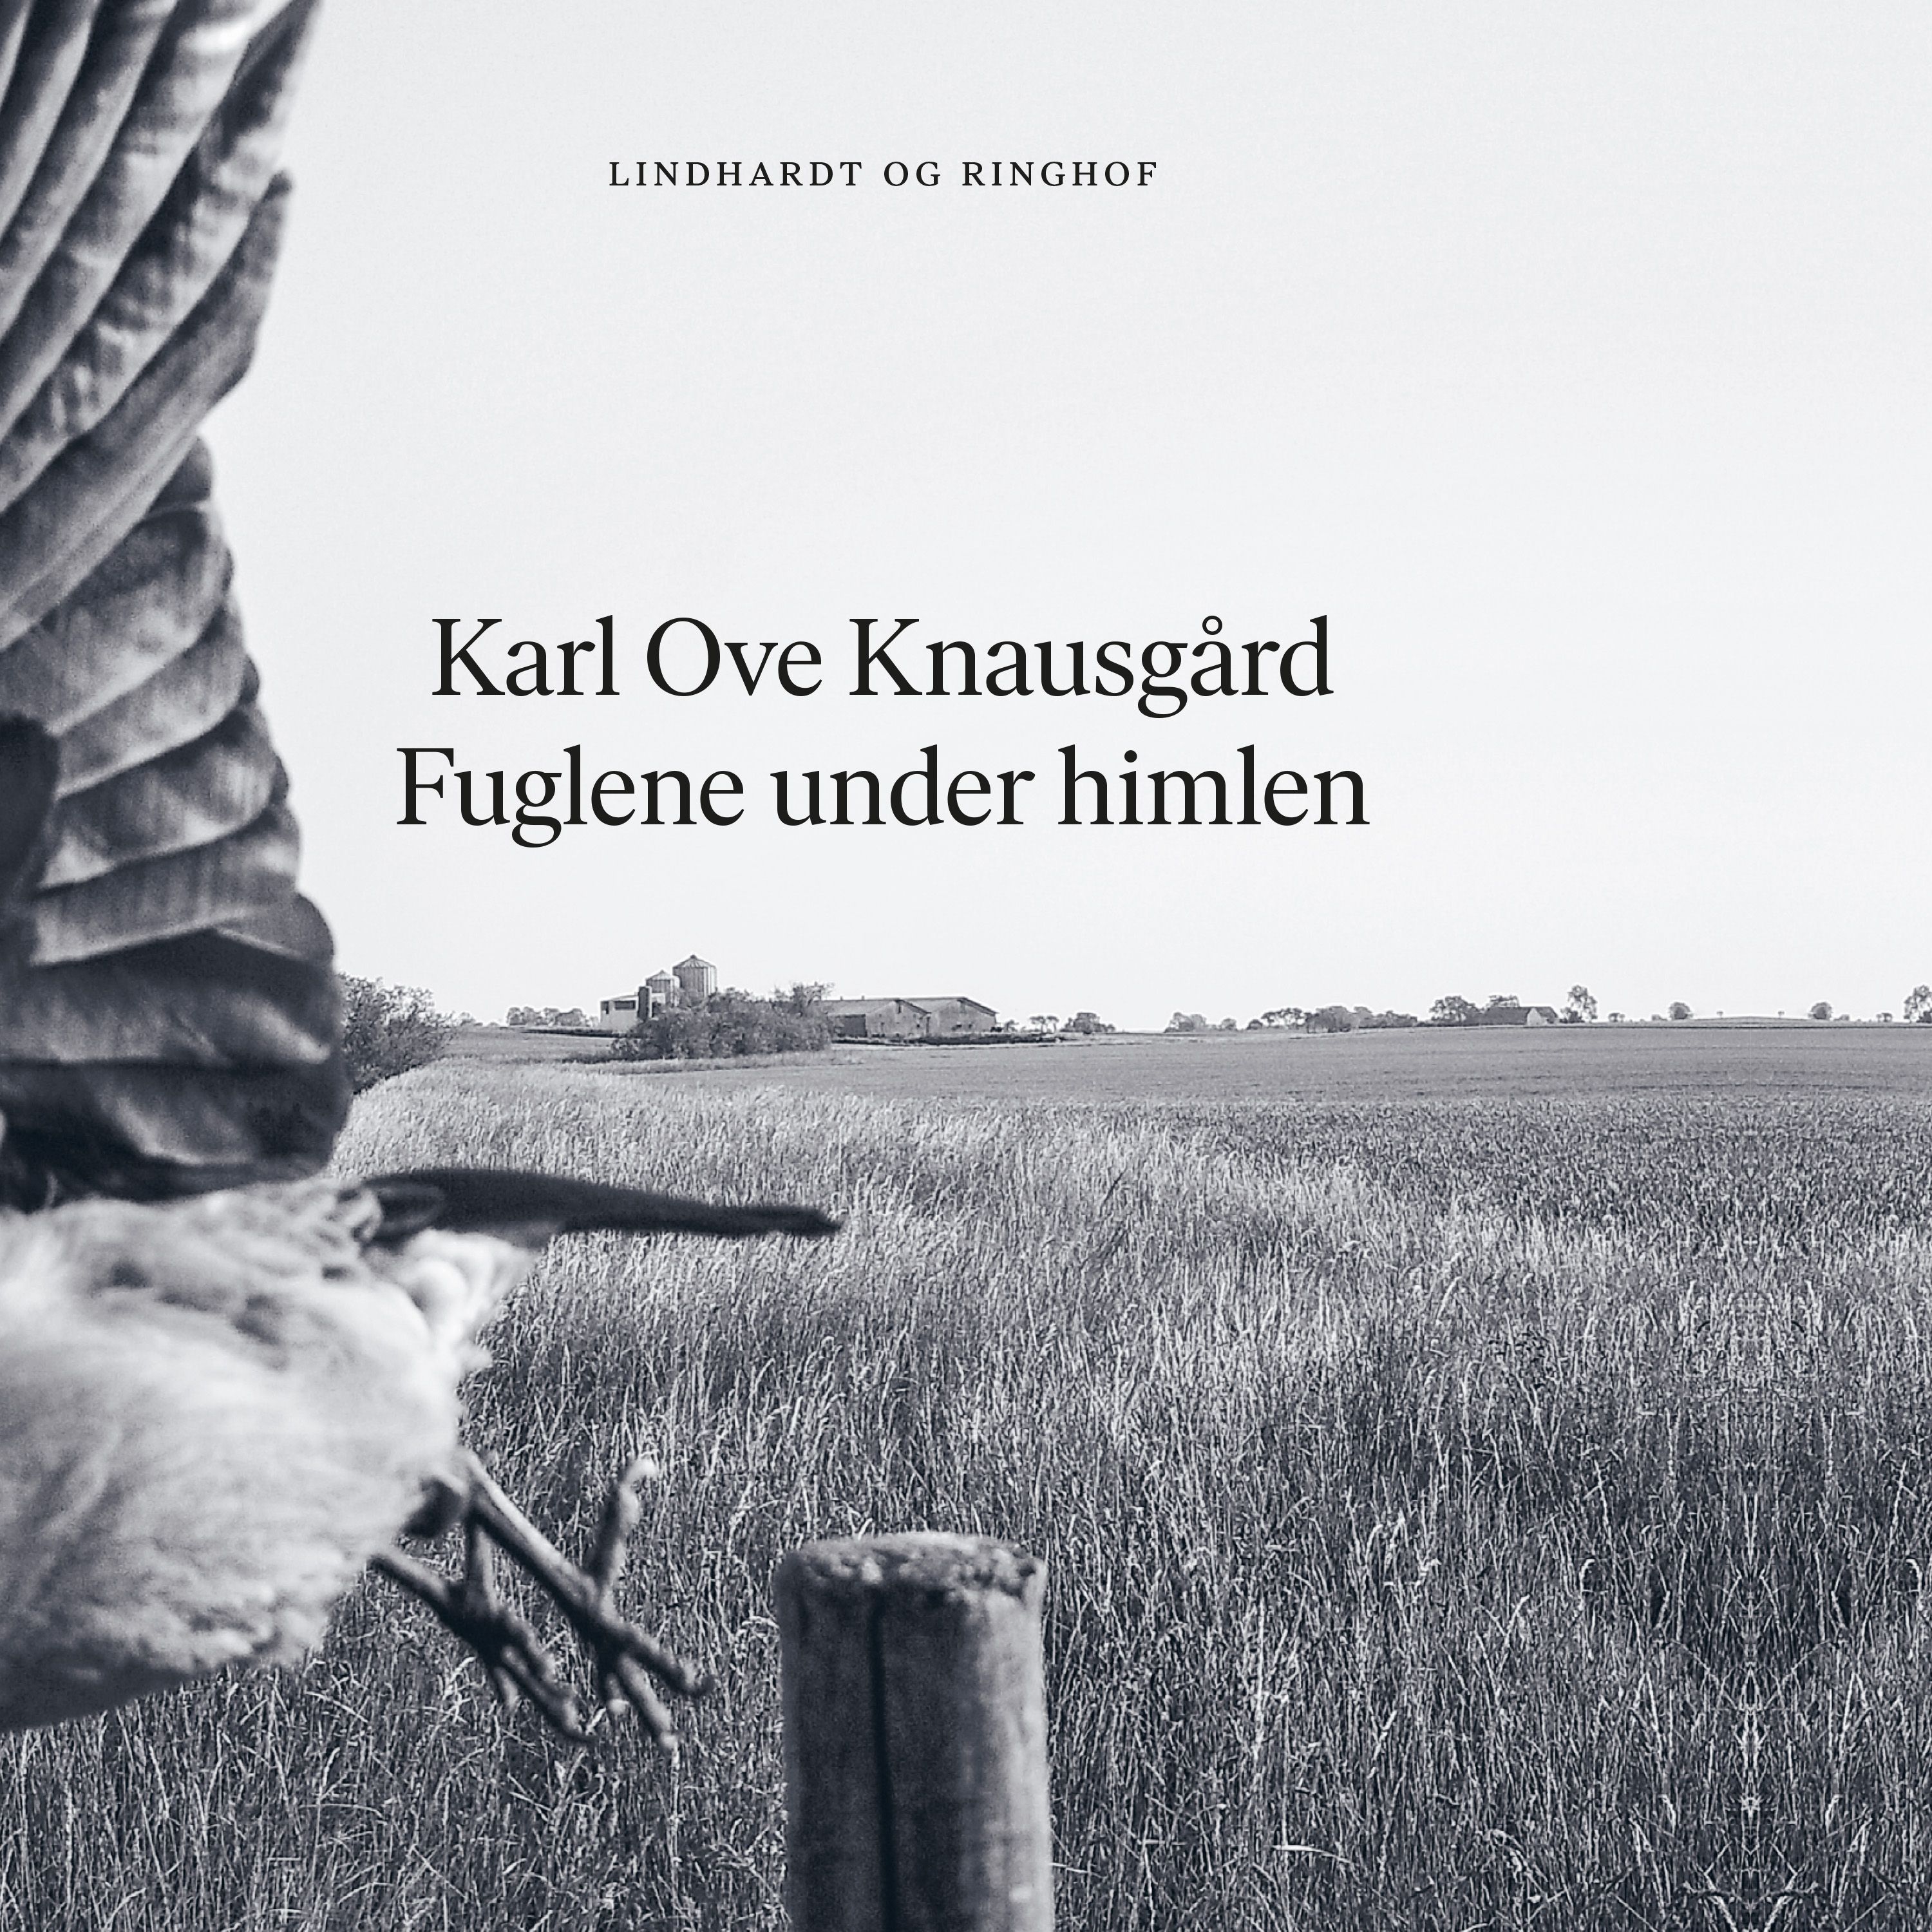 Fuglene under himlen, lydbog af Karl Ove Knausgård